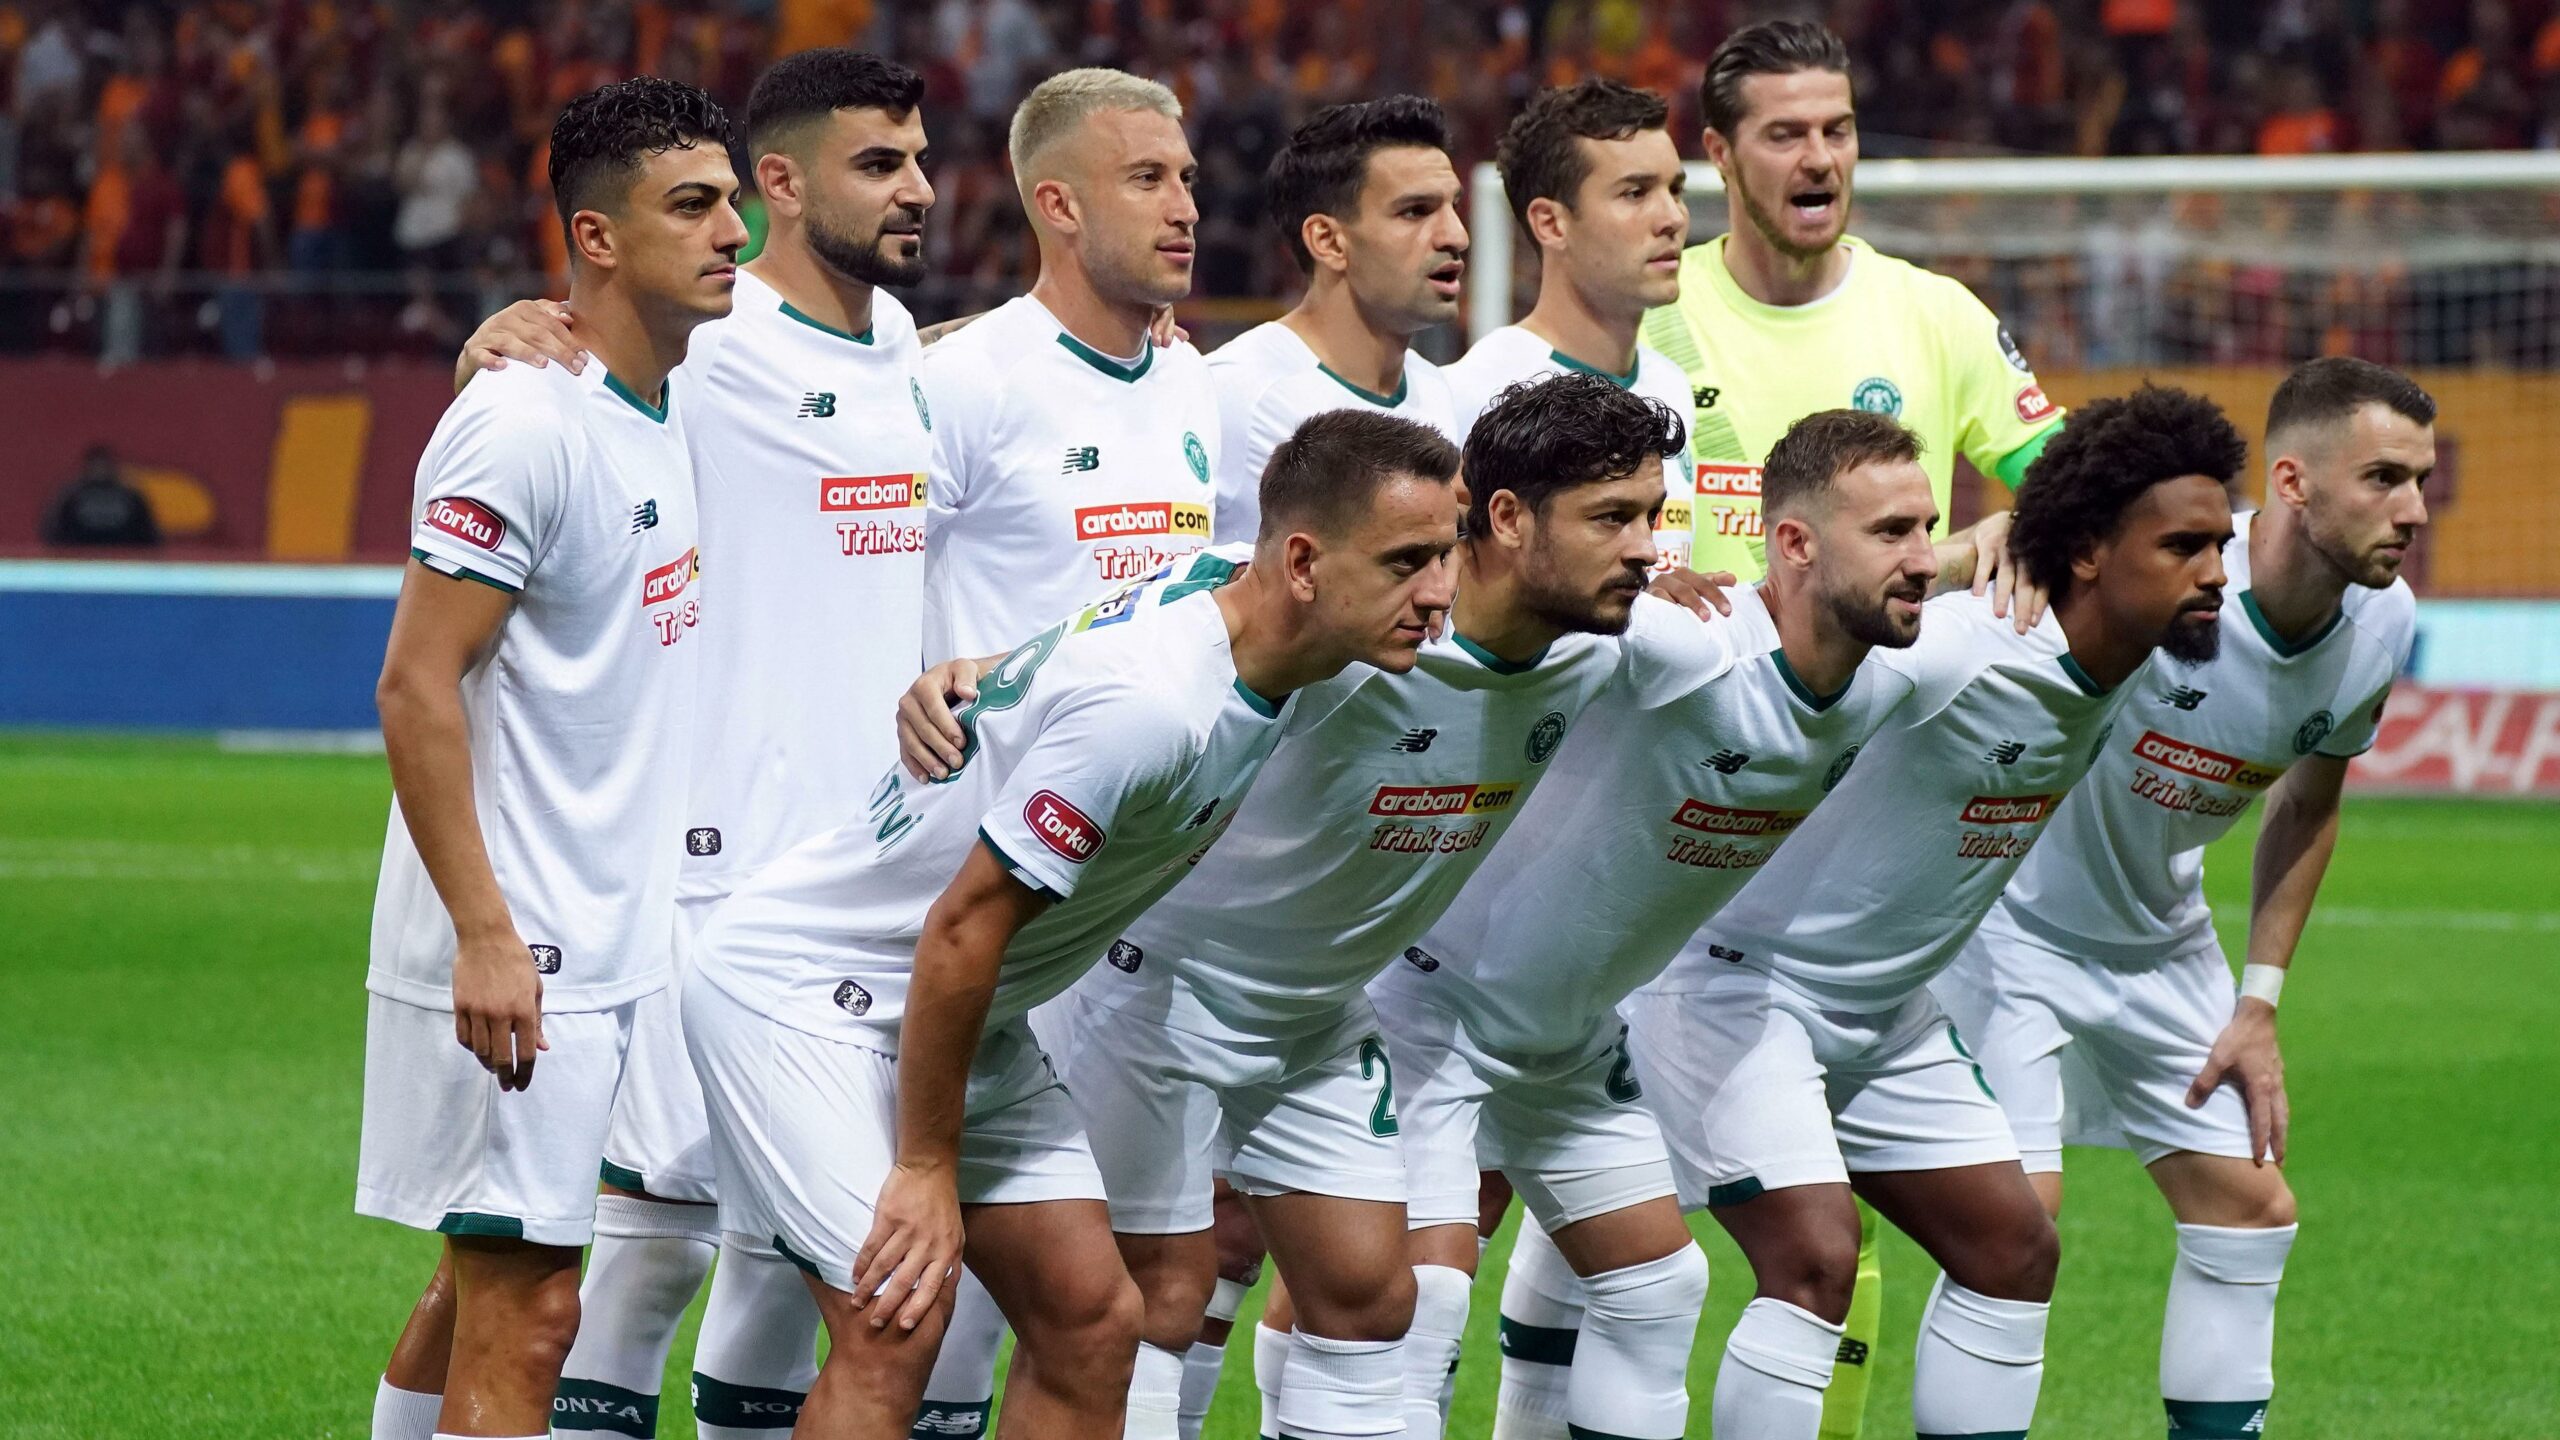 Konyaspor, Galatasaray maçında rekoru kaçırdı